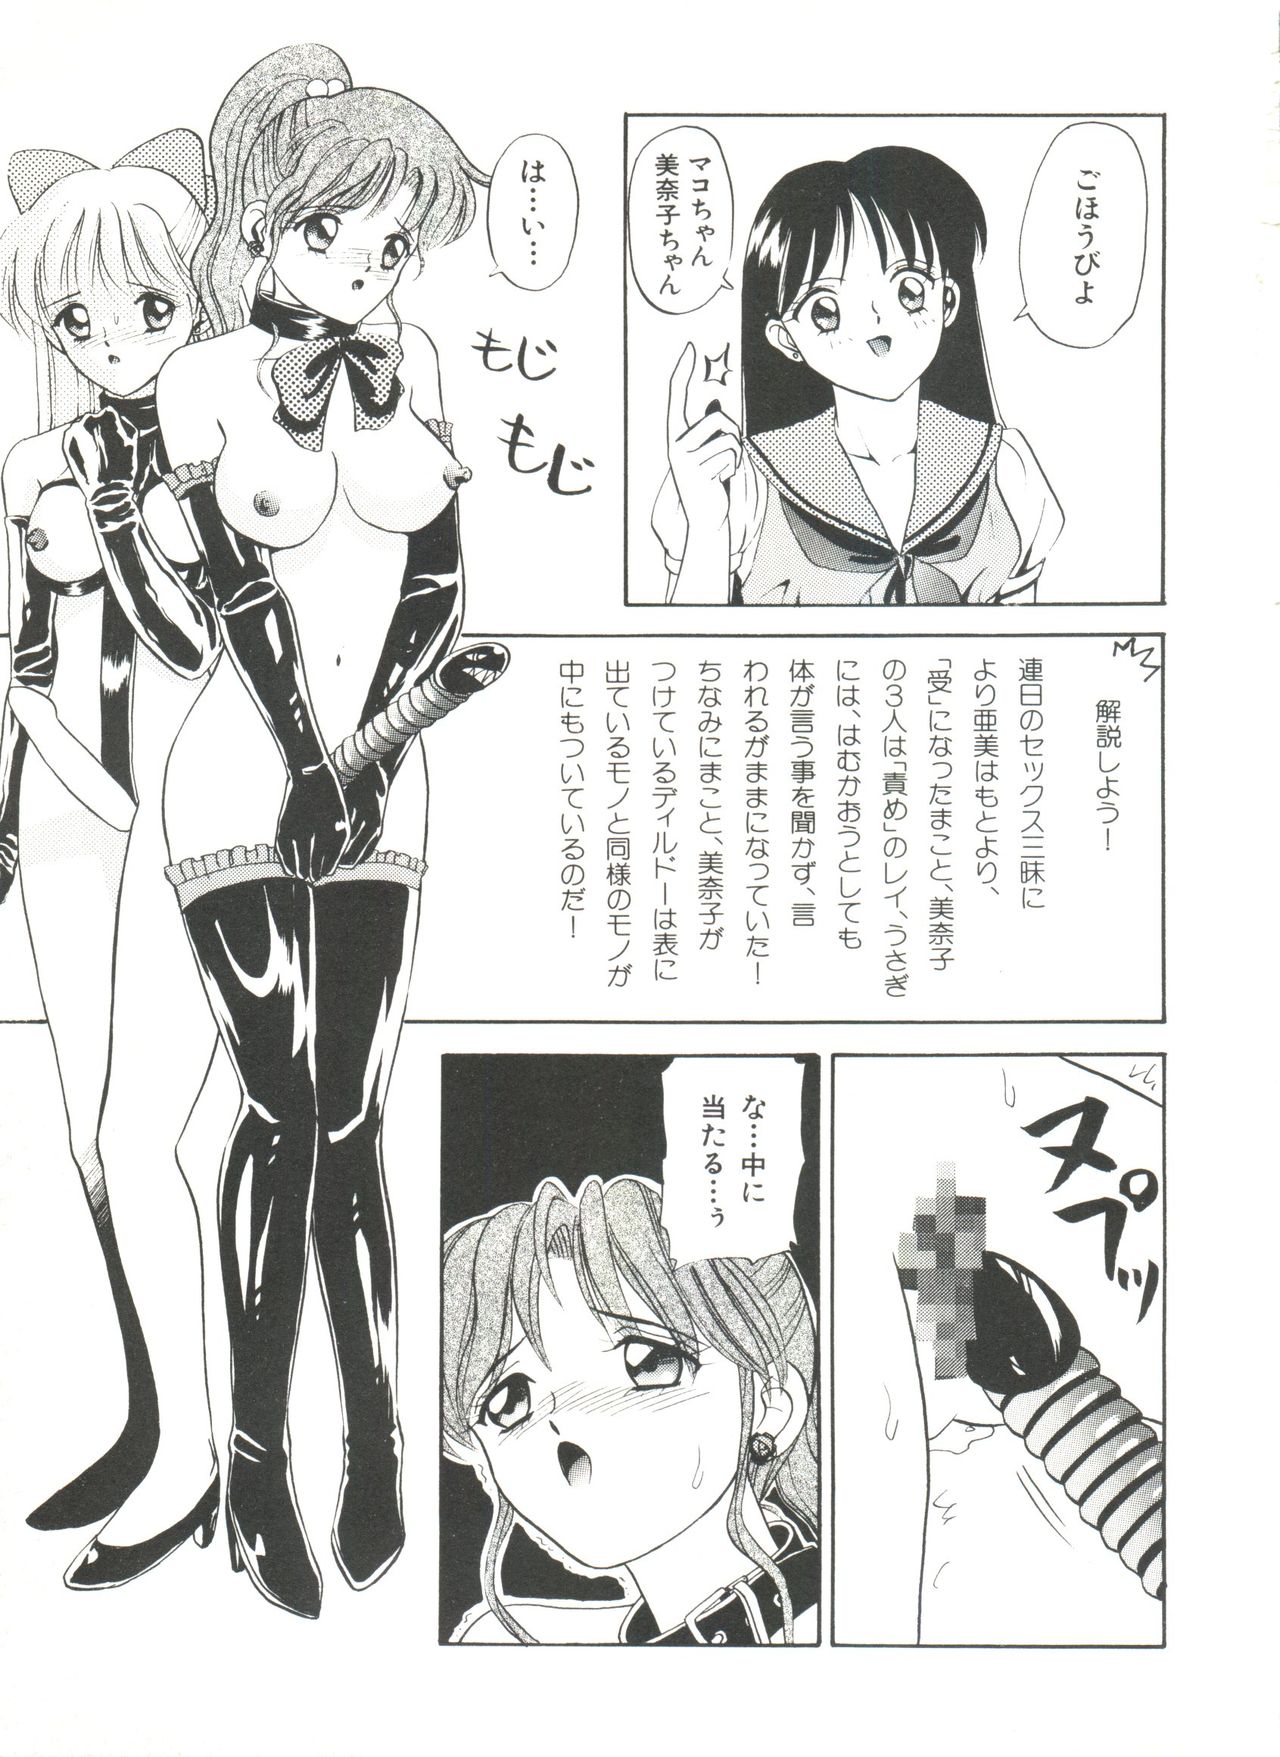 [Anthology] Bishoujo Doujinshi Anthology 18 - Moon Paradise 11 Tsuki no Rakuen (Bishoujo Senshi Sailor Moon) page 25 full